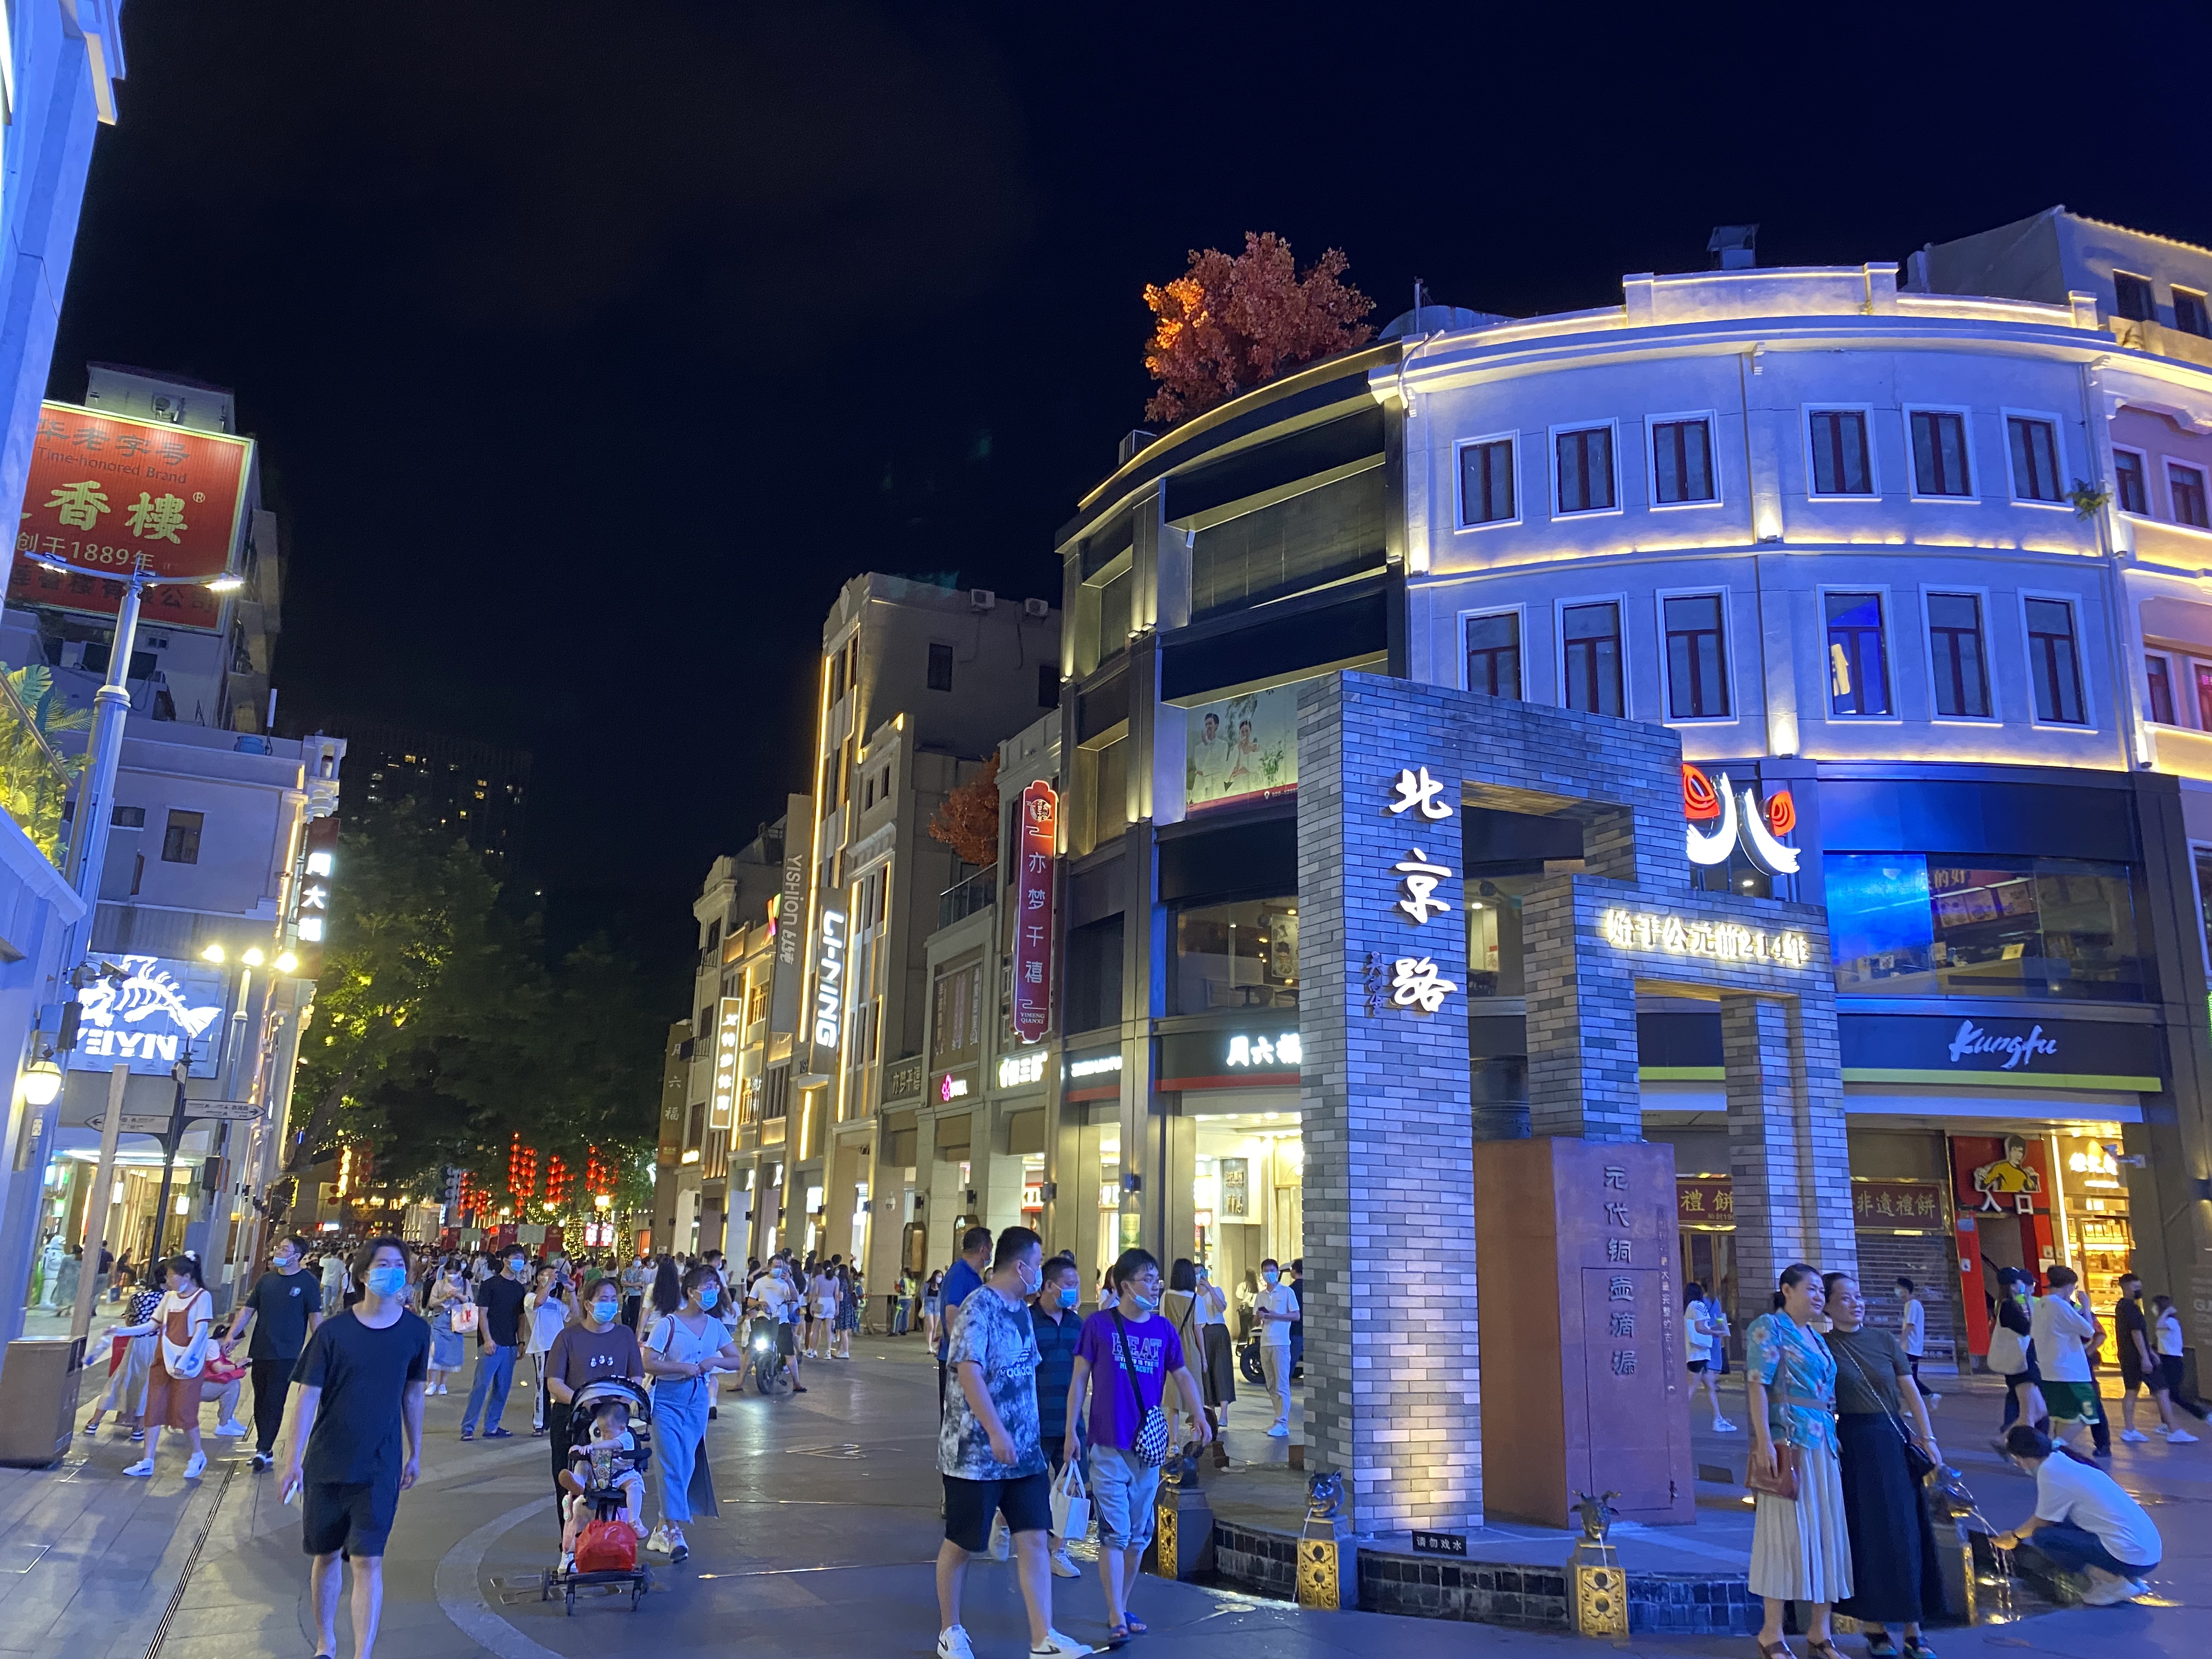 广州的北京路步行街,真是太热闹了!深更半夜竟然还有那么多人